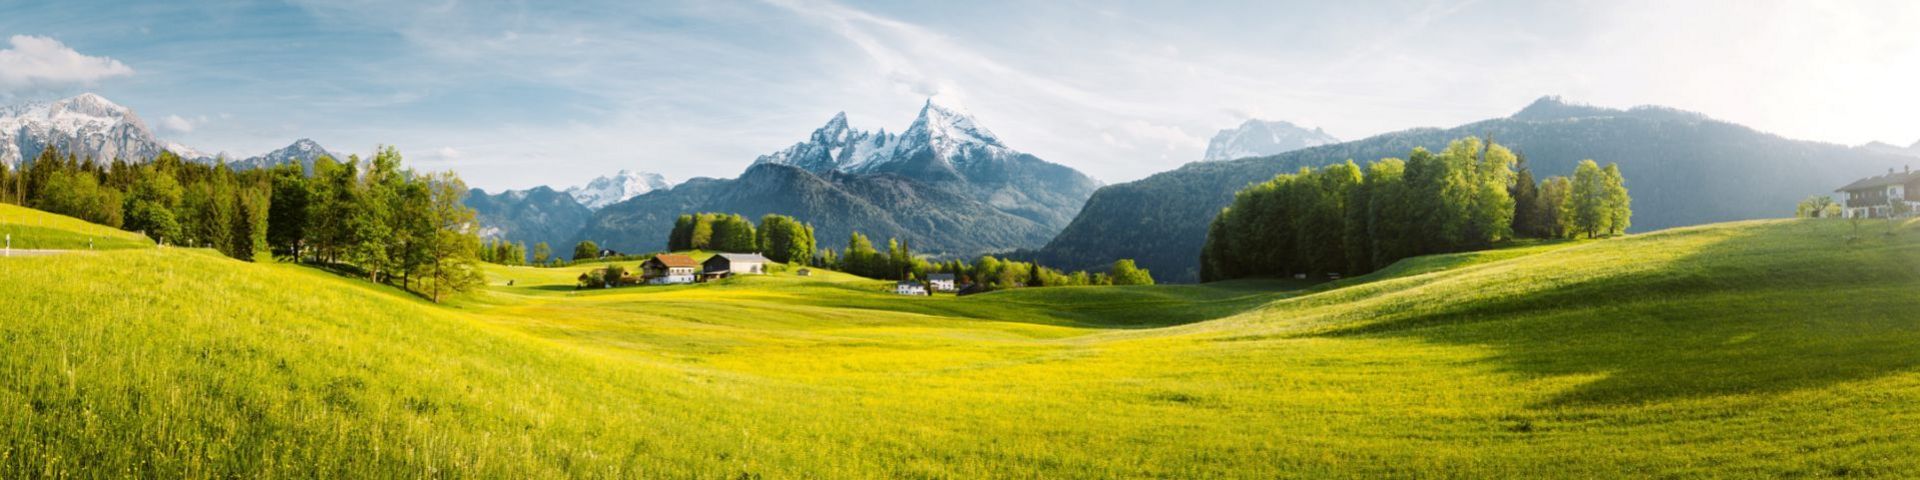 Alpen im Frühling auf einer Österreich Reise mit sz-Reisen